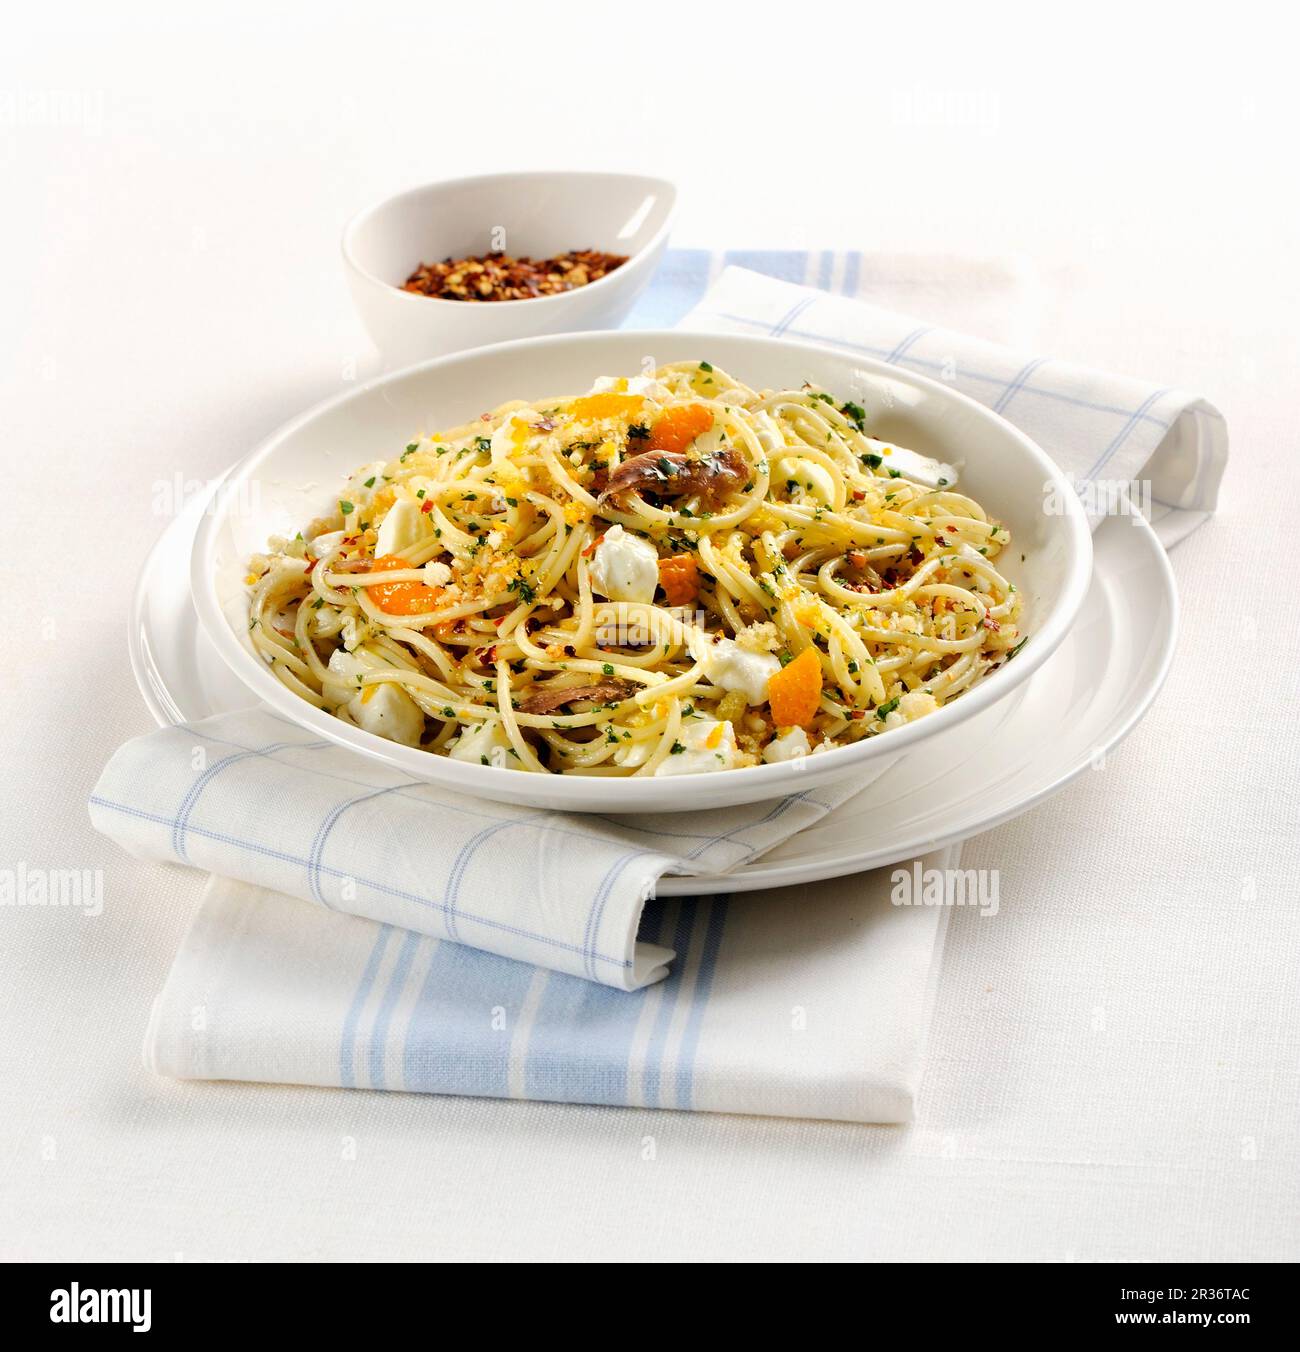 Spaghetti all'acciuga (Italian pasta with anchovies) Stock Photo